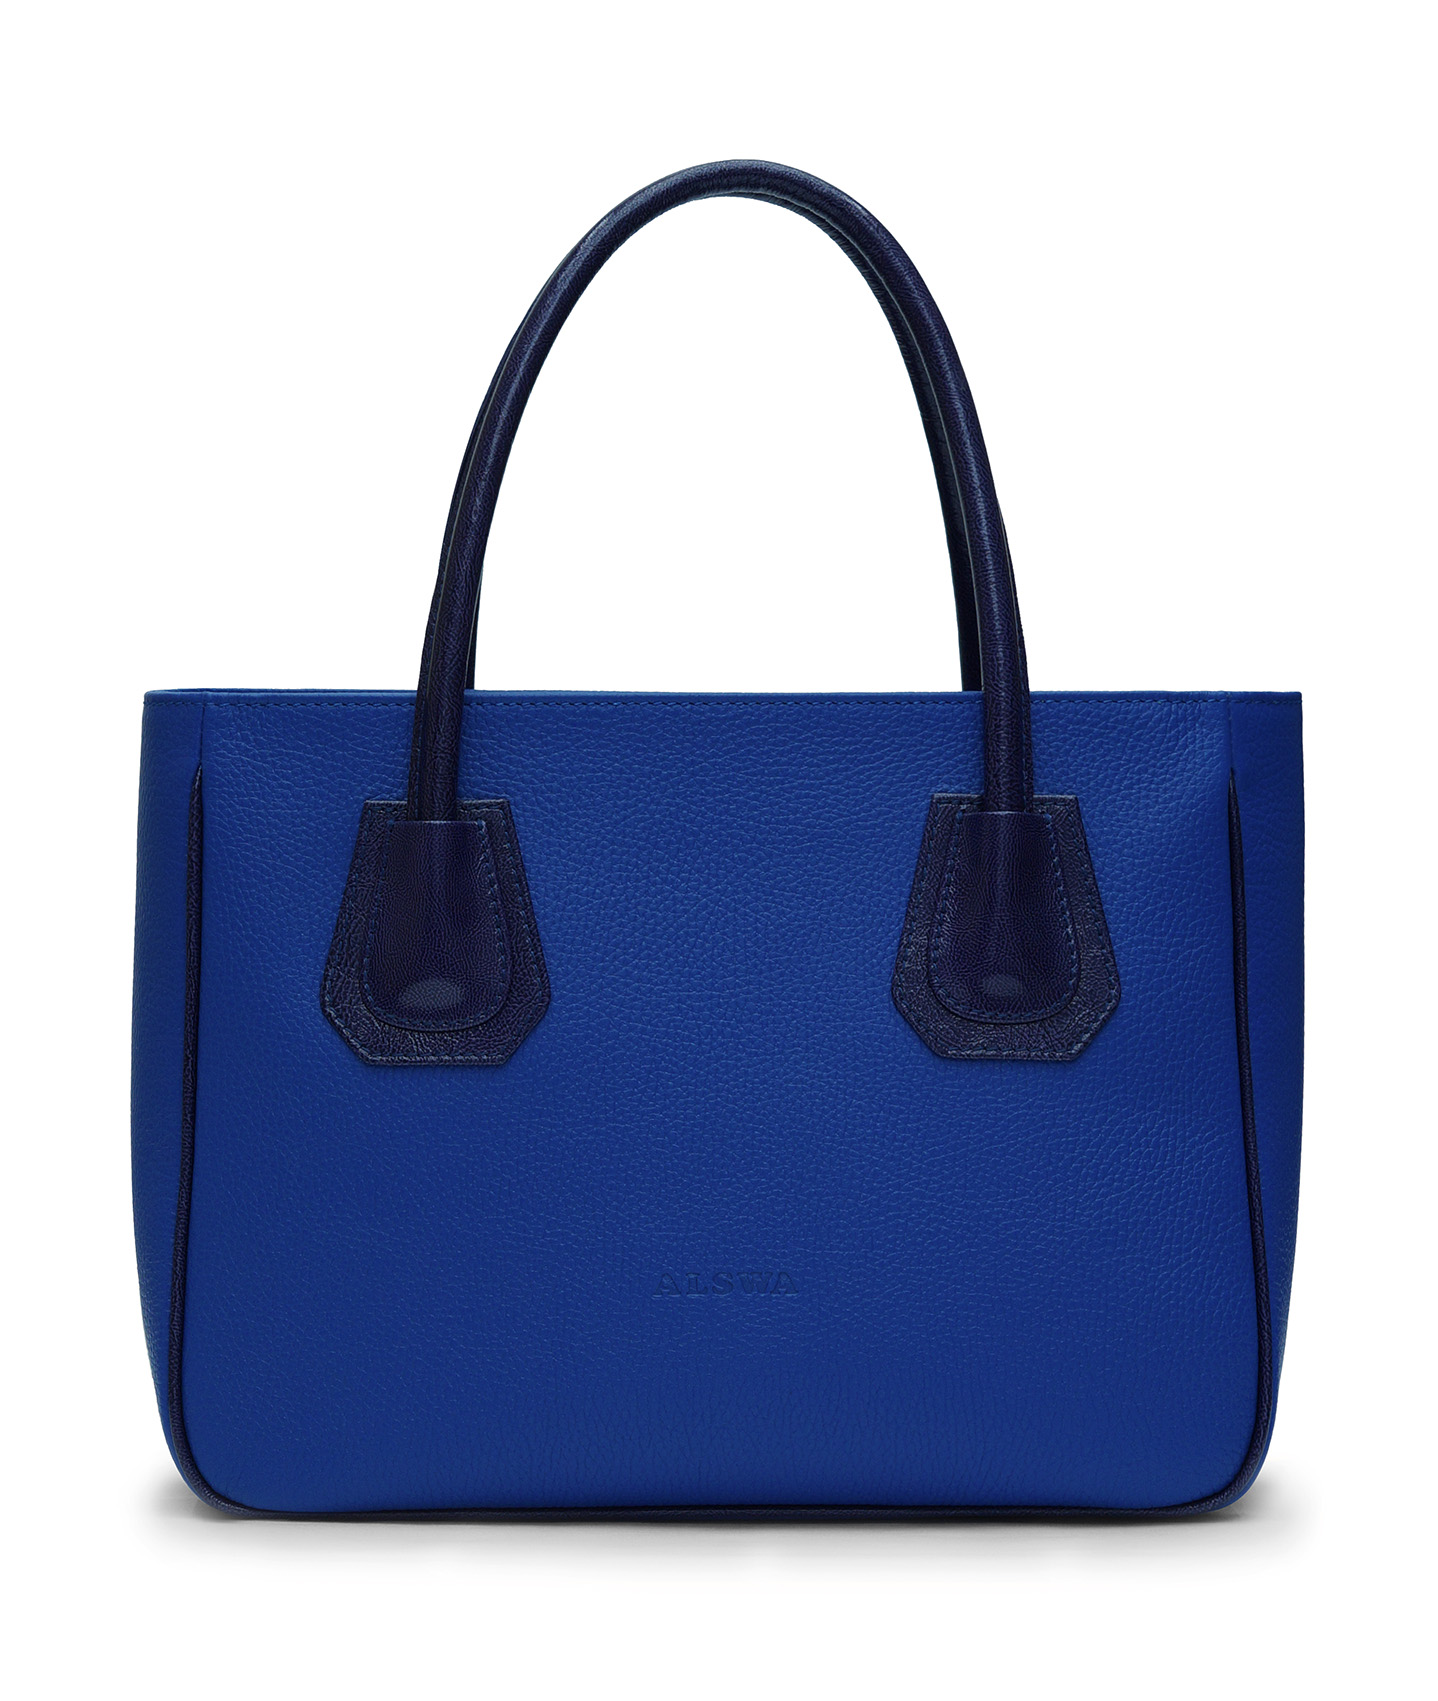 Купить голубую сумку женскую. Сумка Gaetano Riva женская синяя. Jackie mus сумка синяя. Синяя сумка женская валберис. Синяя сумка Askent.